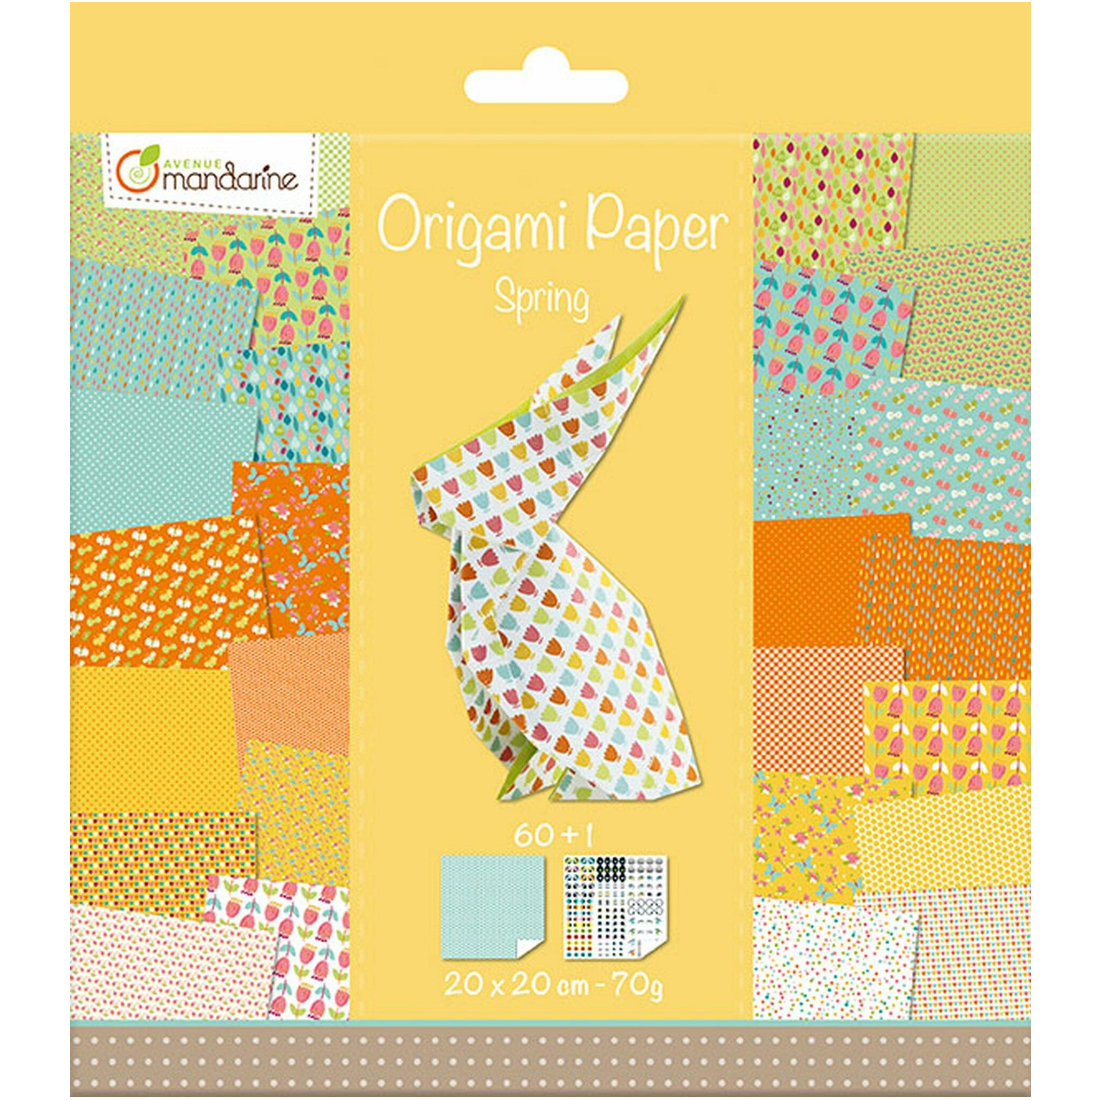 Papel Origami Spring avenue mandarine